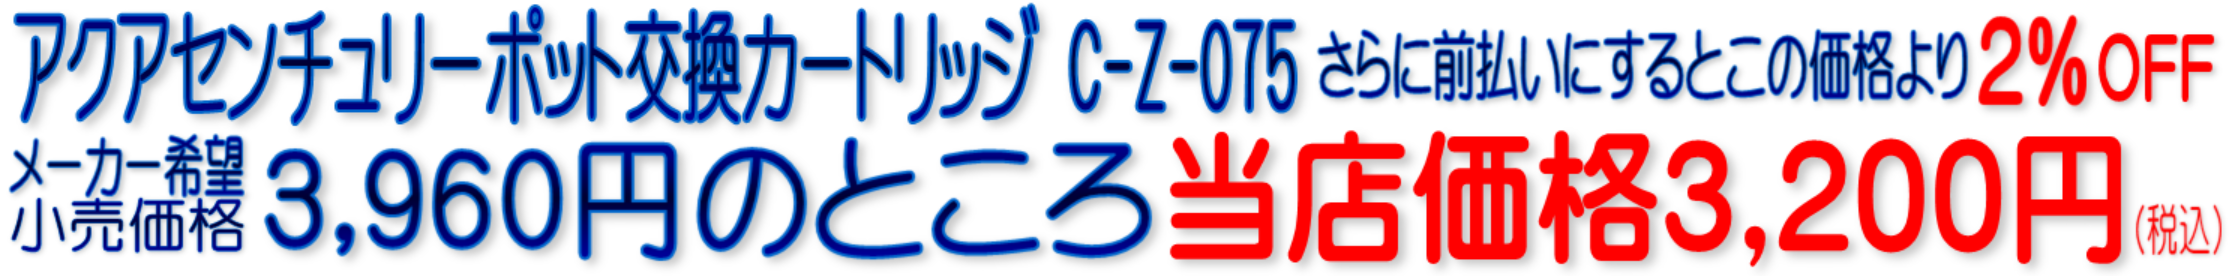 C-Z-075